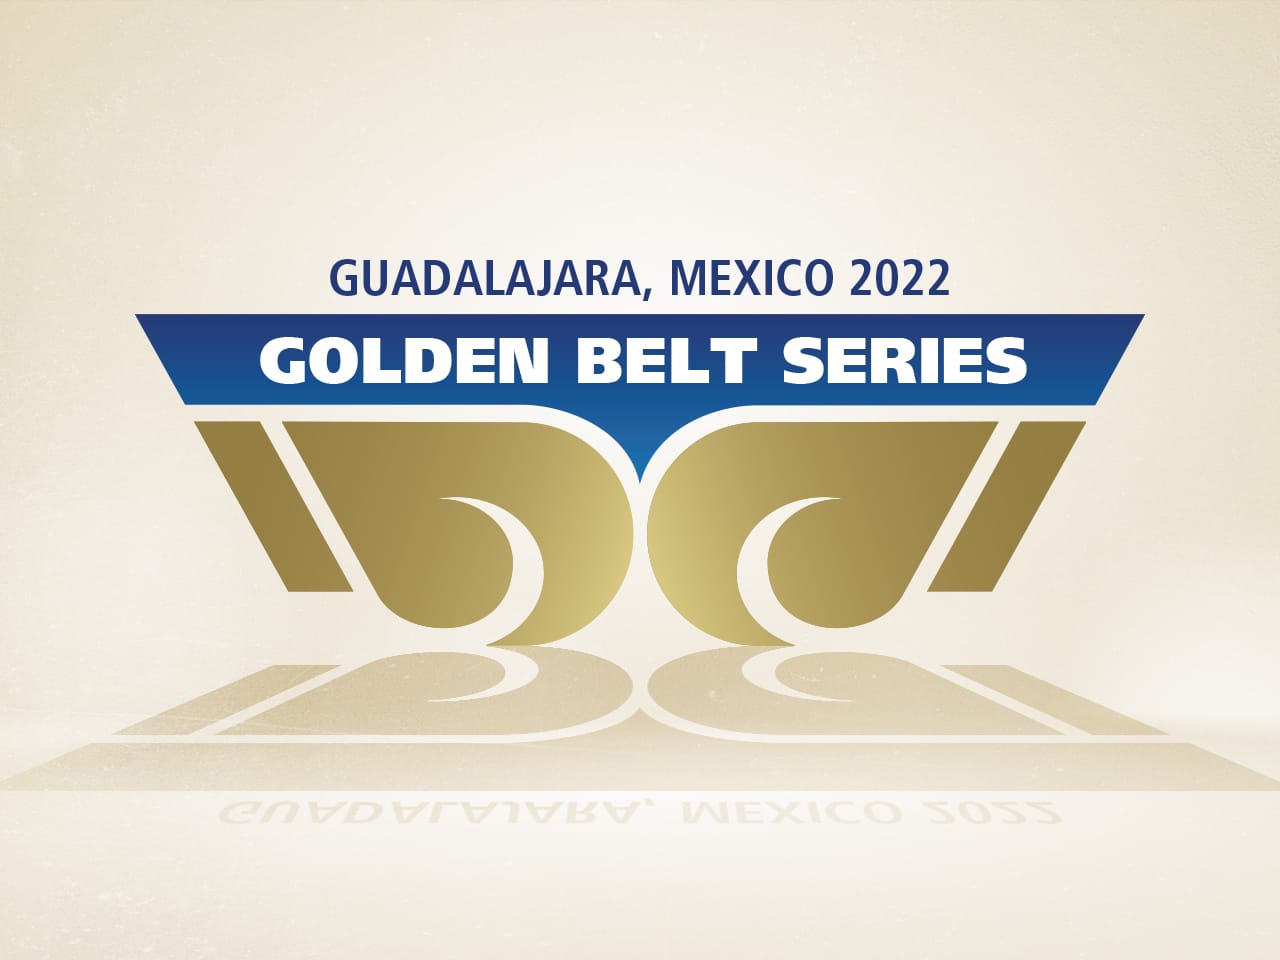 El torneo Golden Belt Series se llevará a cabo en México – IBA